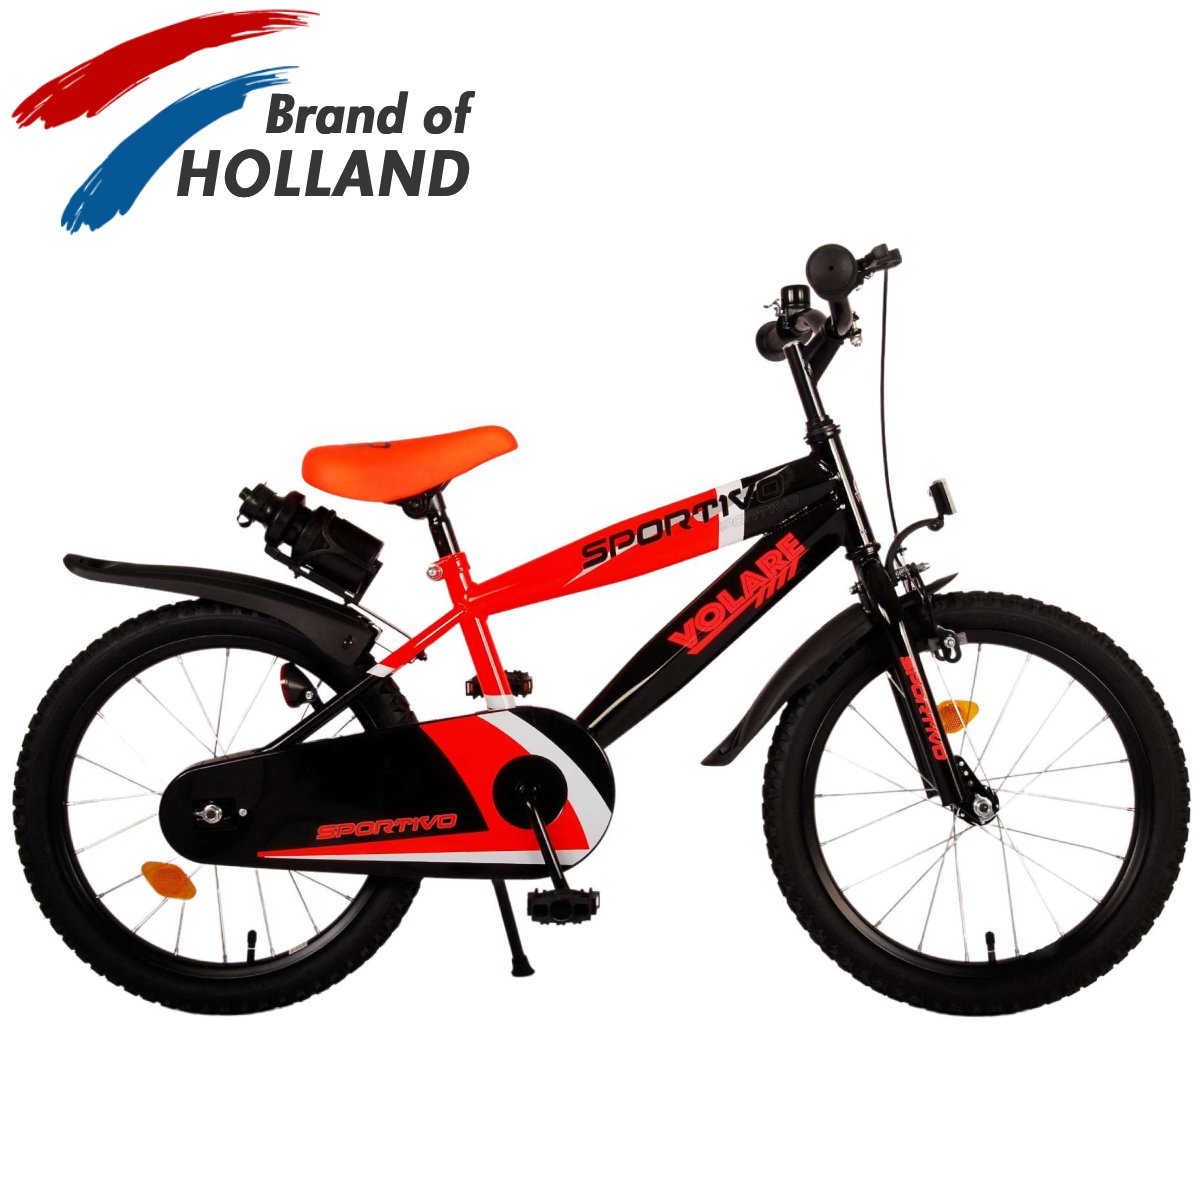 Vaikiškas dviratis VOLARE Sportivo, 18 dydis, juodas/oranžinis